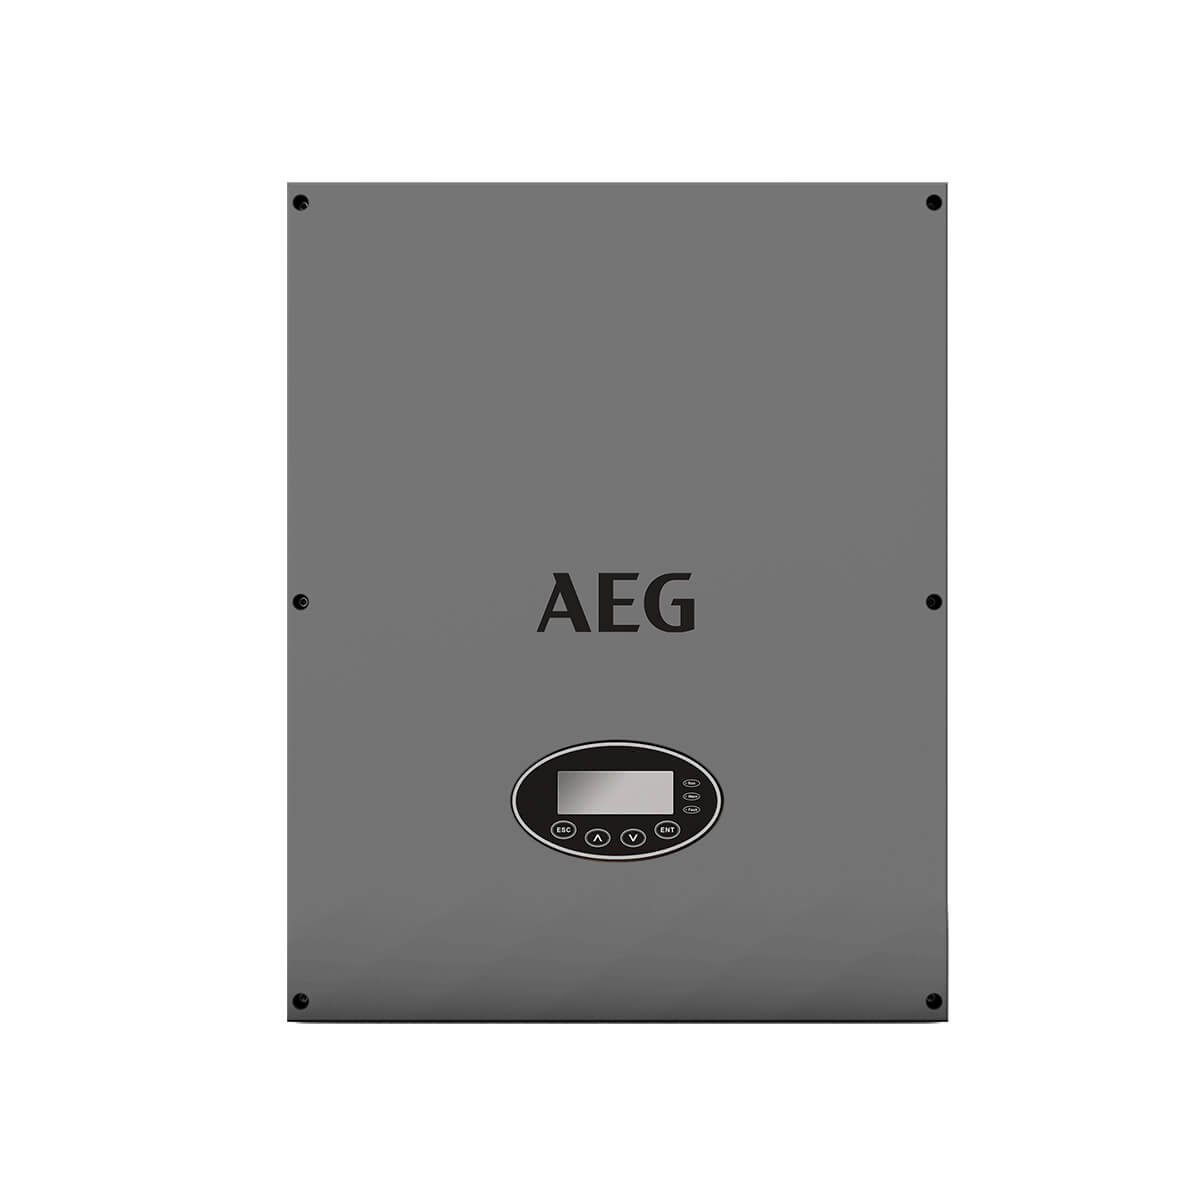 aeg 12kW inverter, aeg as-ic01 12kW inverter, aeg as-ic01-12000-2 inverter, aeg as-ic01-12000-2, aeg as-ic01 12kW, AEG 12 KW